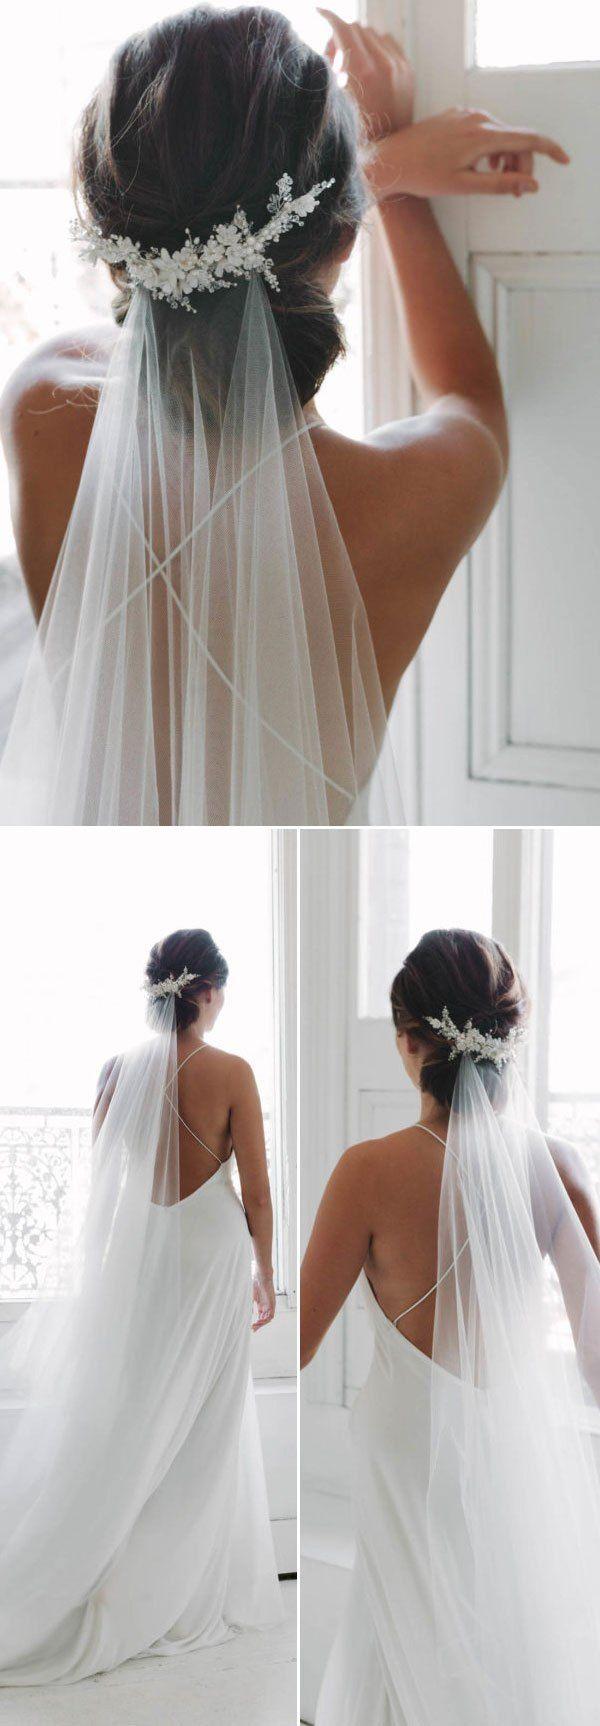 زفاف - Top 20 Wedding Hairstyles With Veils And Accessories